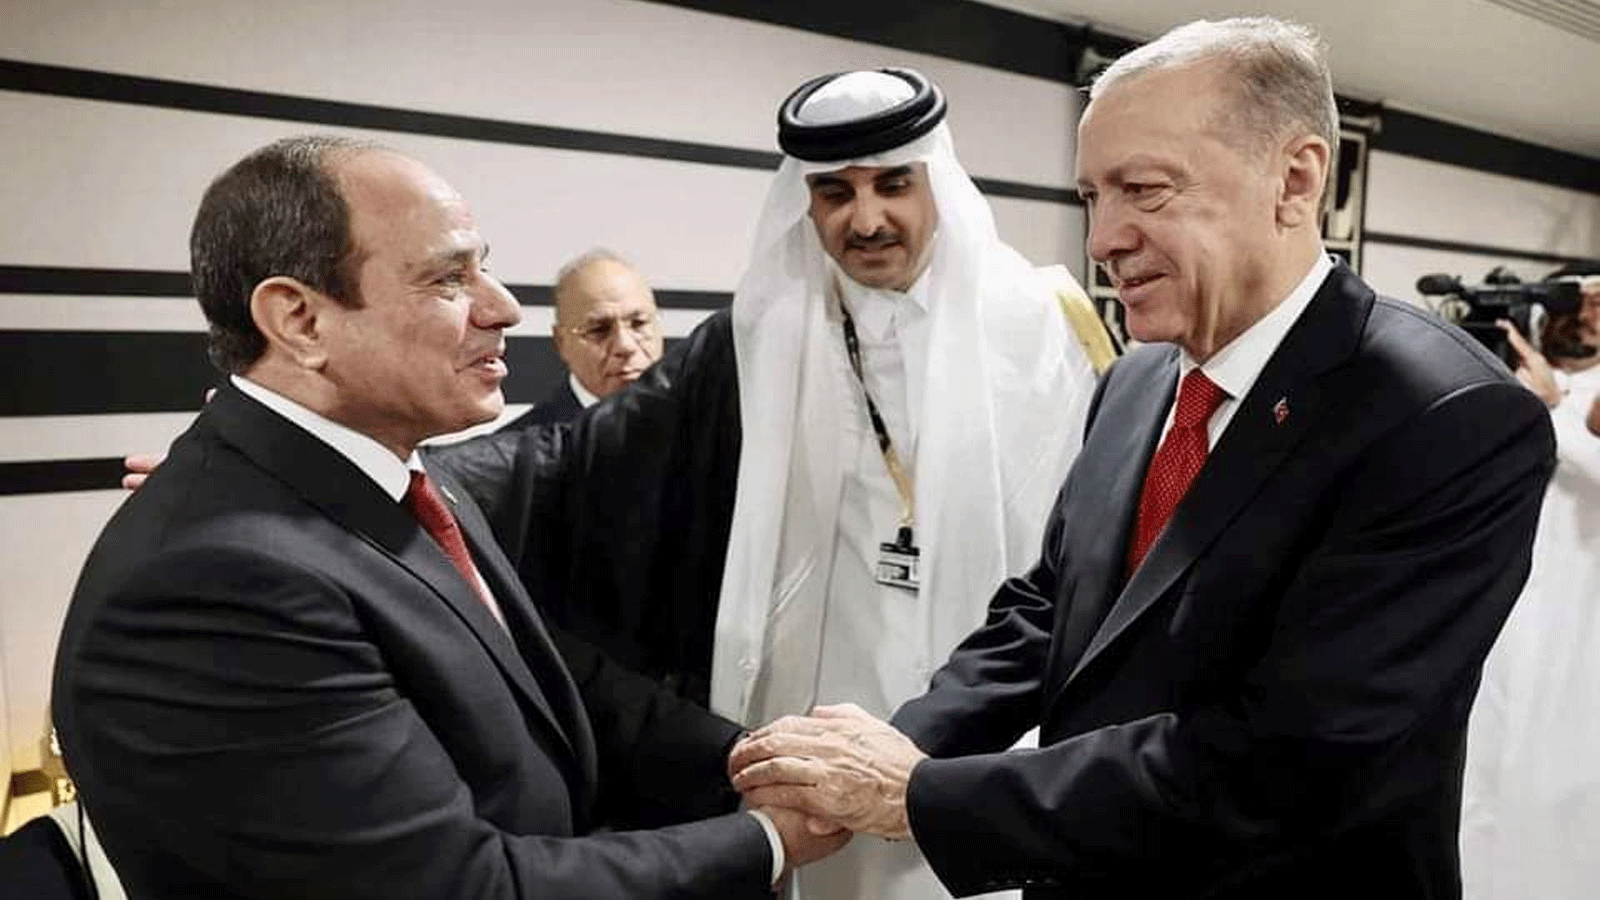 مصافحة بين الرئيسيين التركي والمصري(صورة نشرتها صفحة الرئاسة المصرية على فيسبوك)